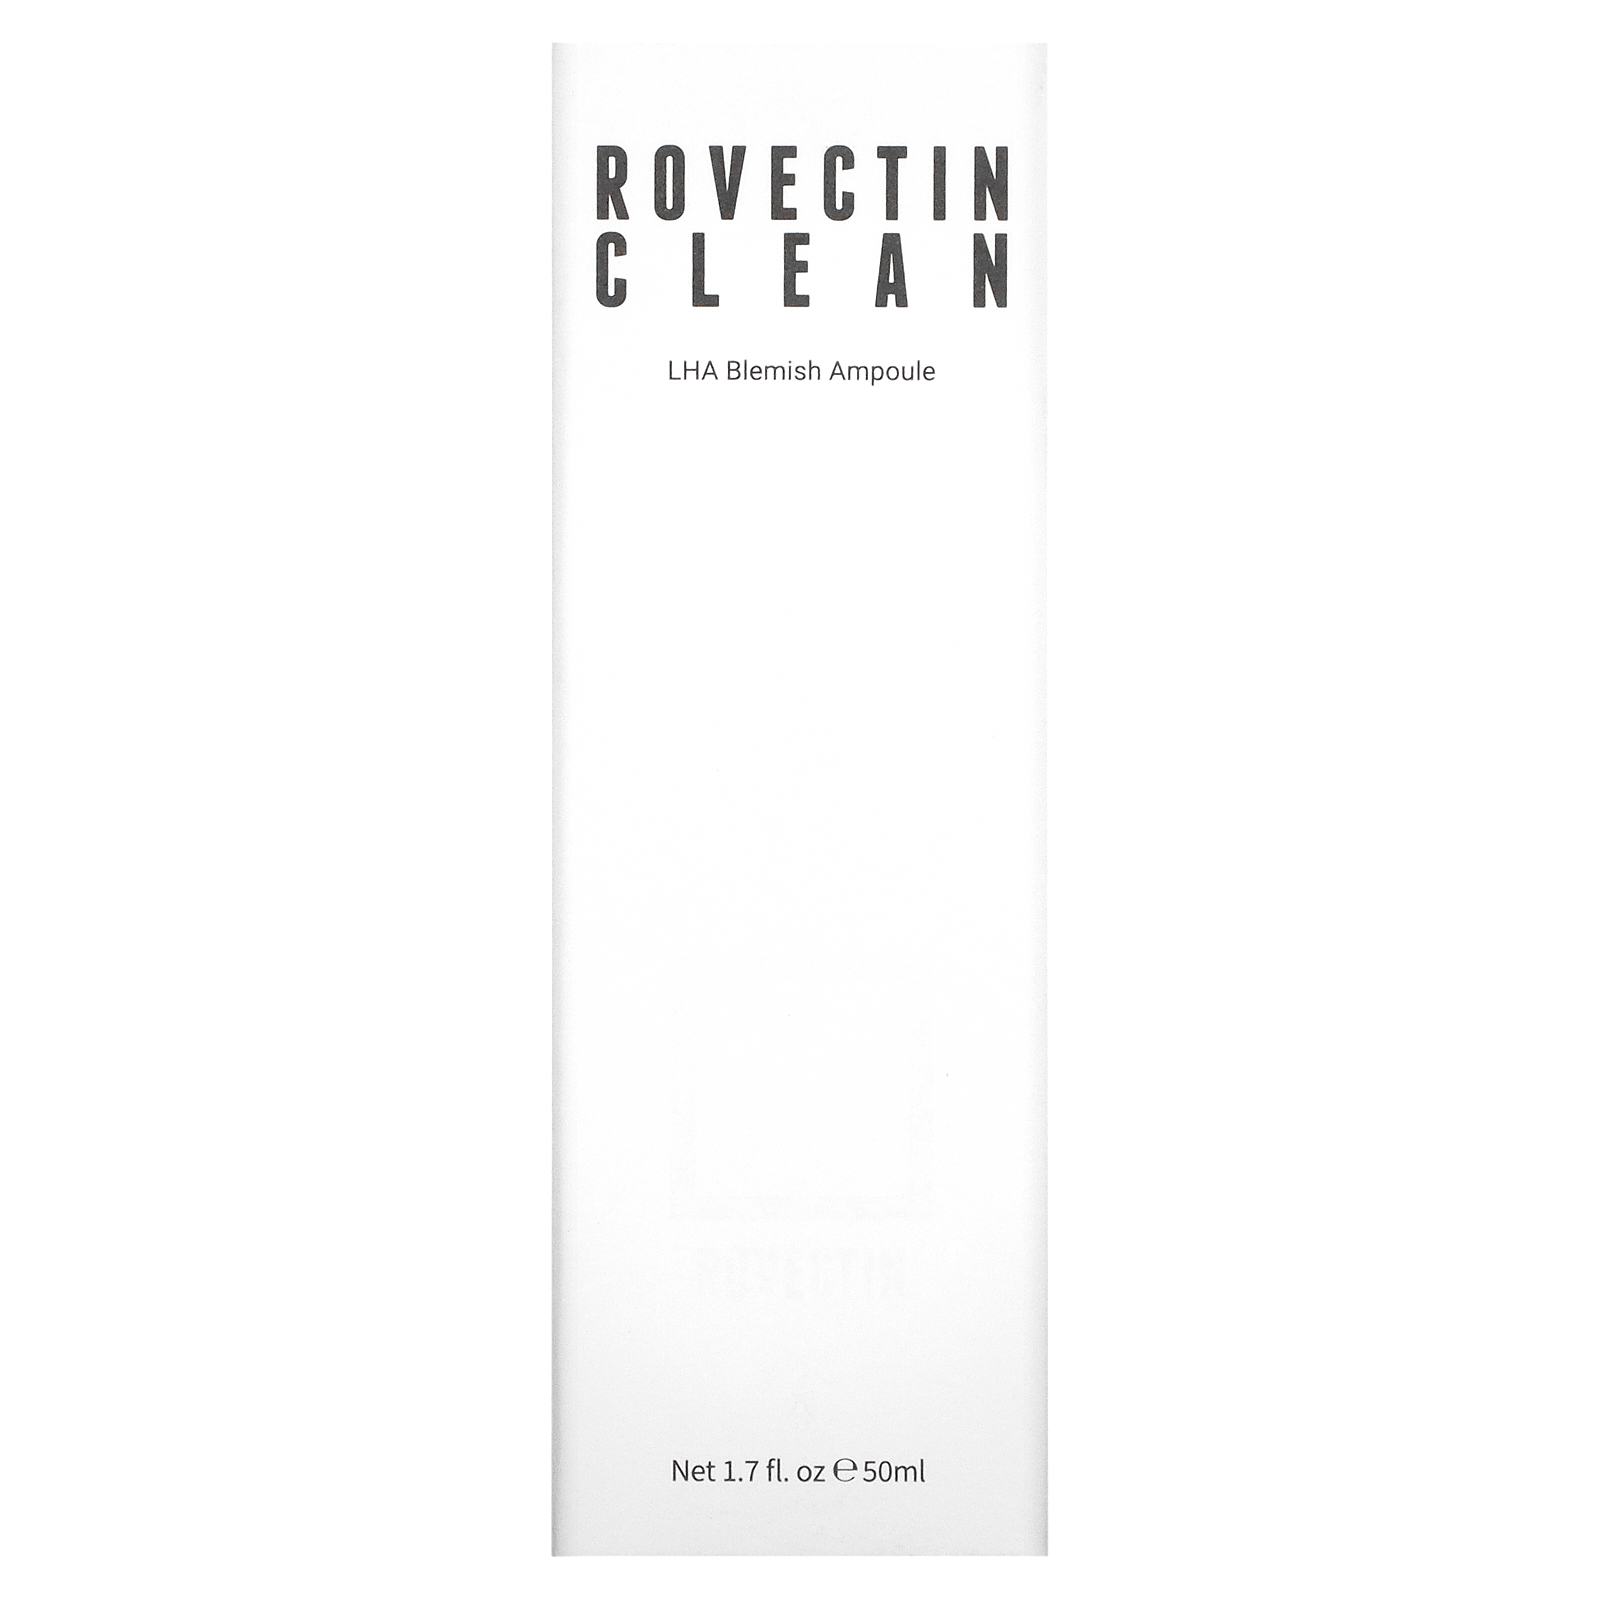 Rovectin Clean LHA Blemish Ampoule, 1.7 fl oz (50 ml) - image 2 of 2